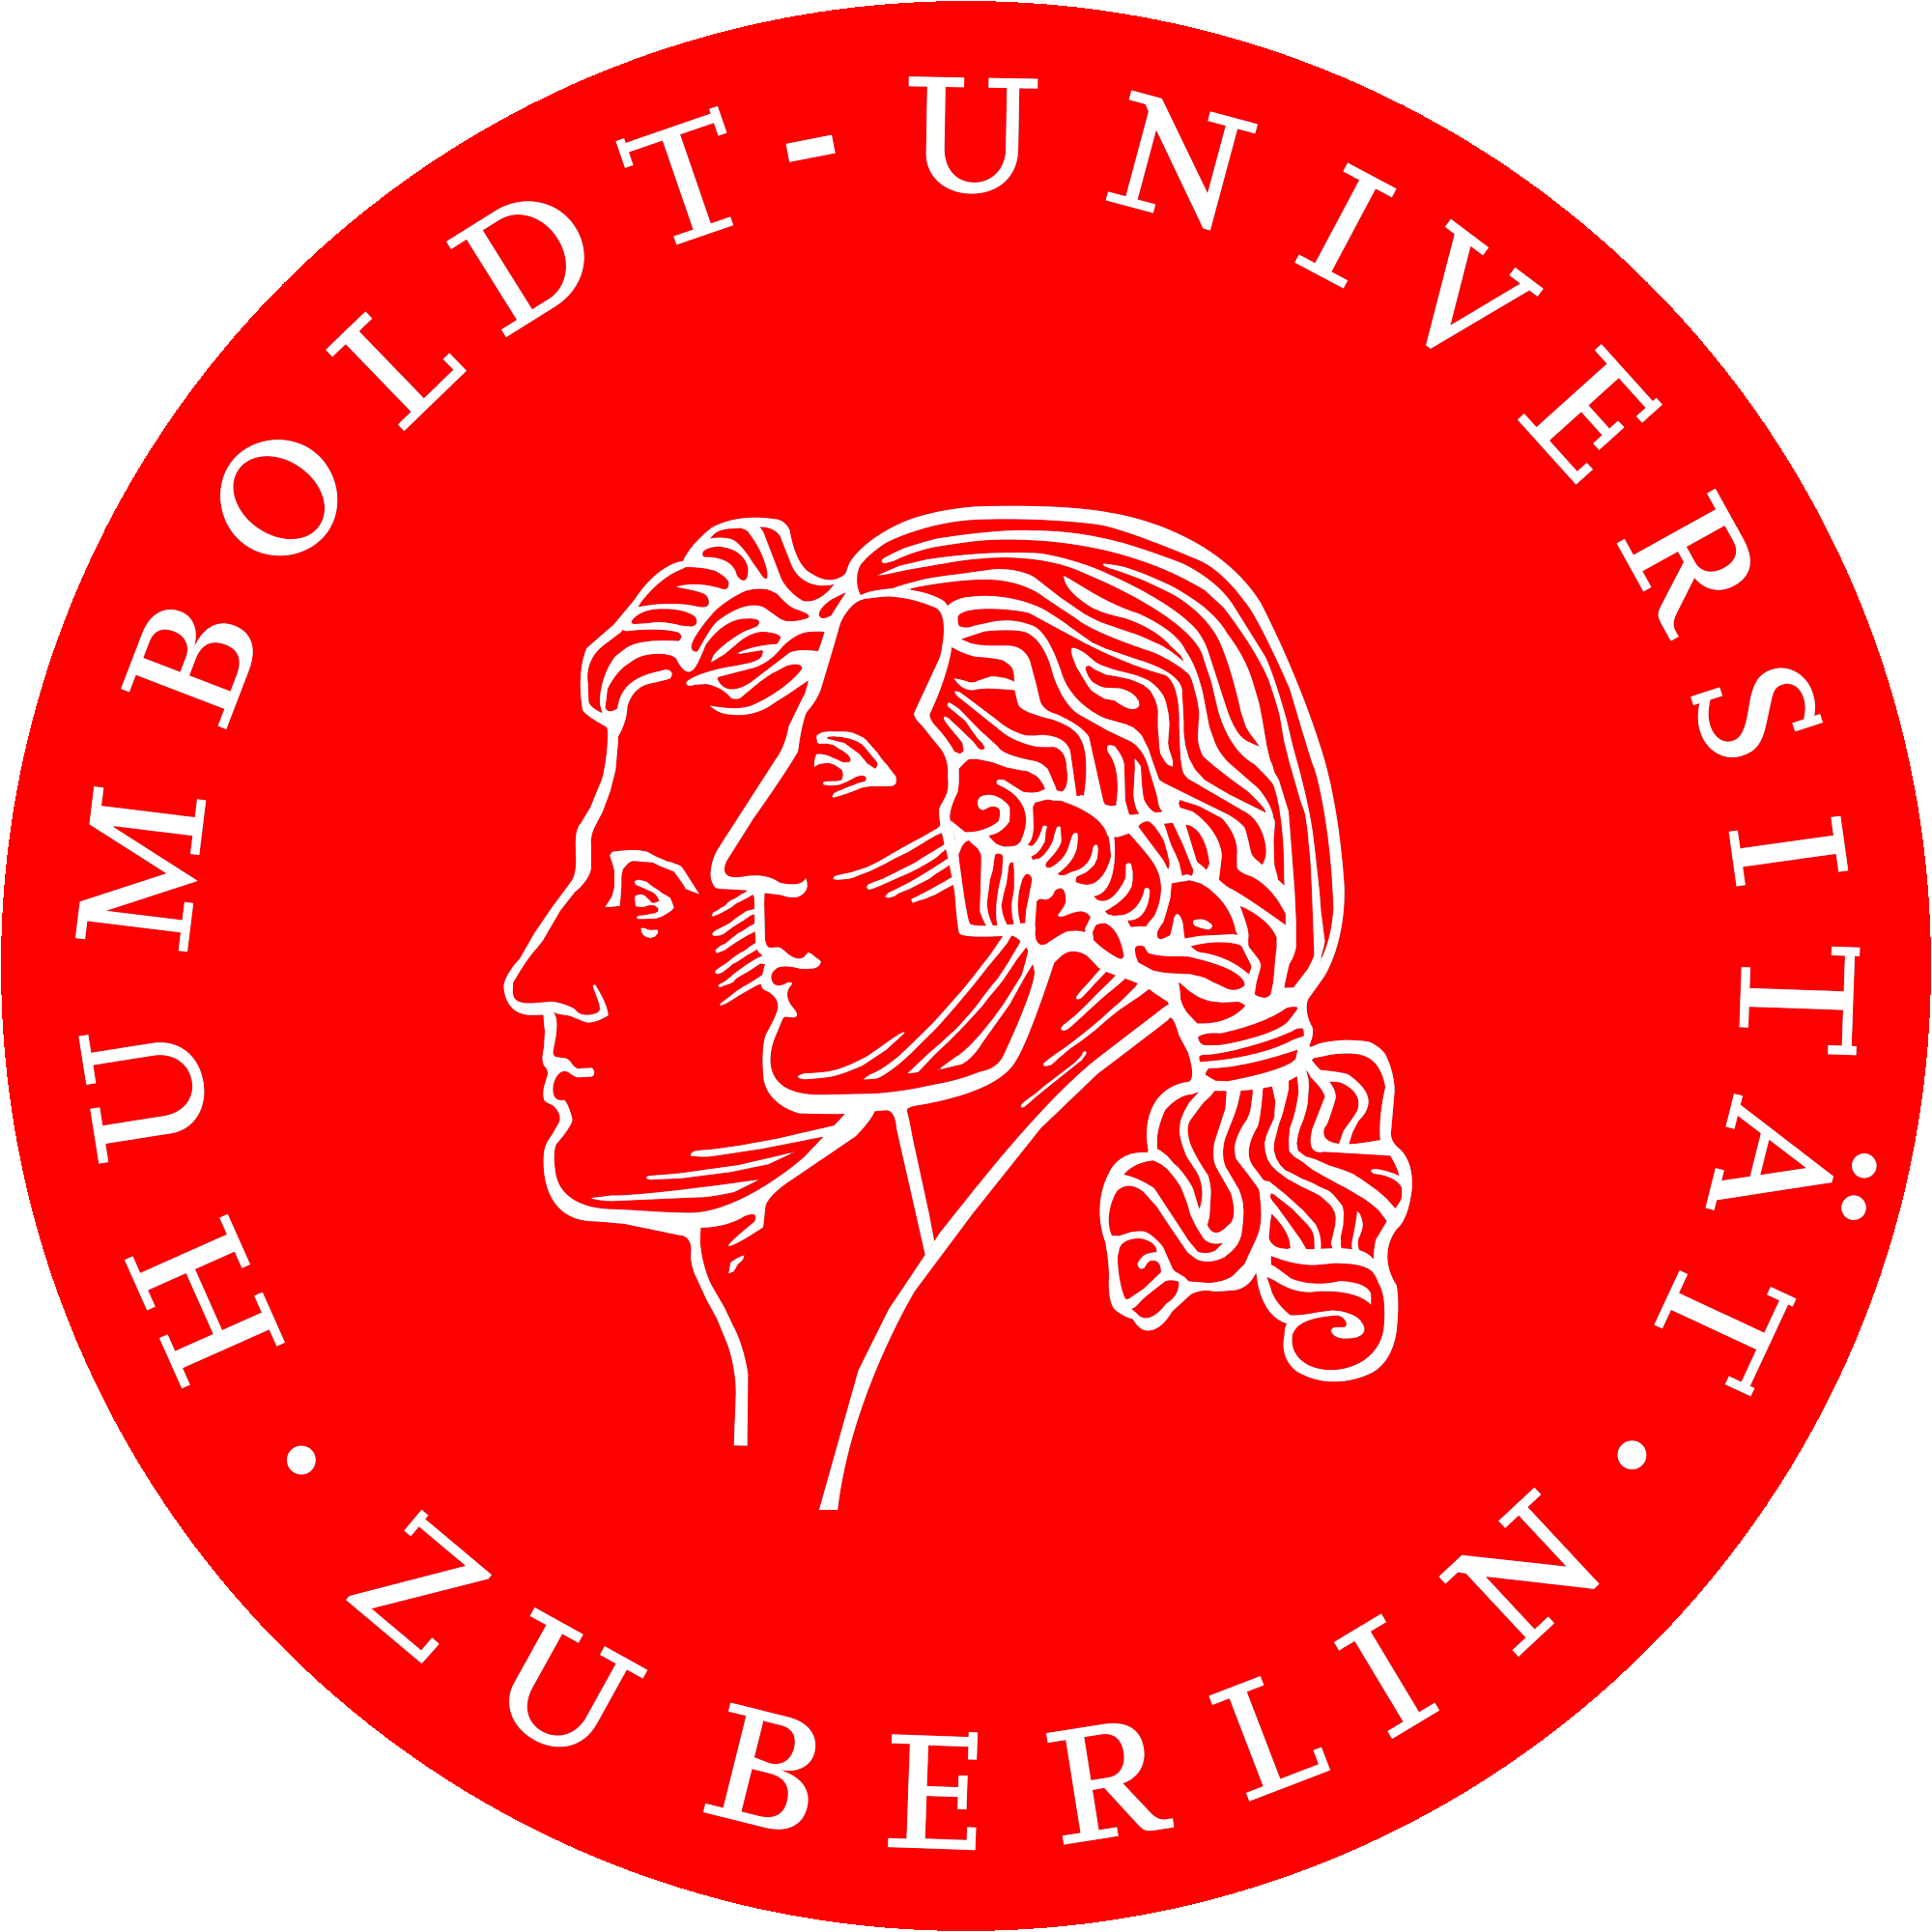 Humbold University logo